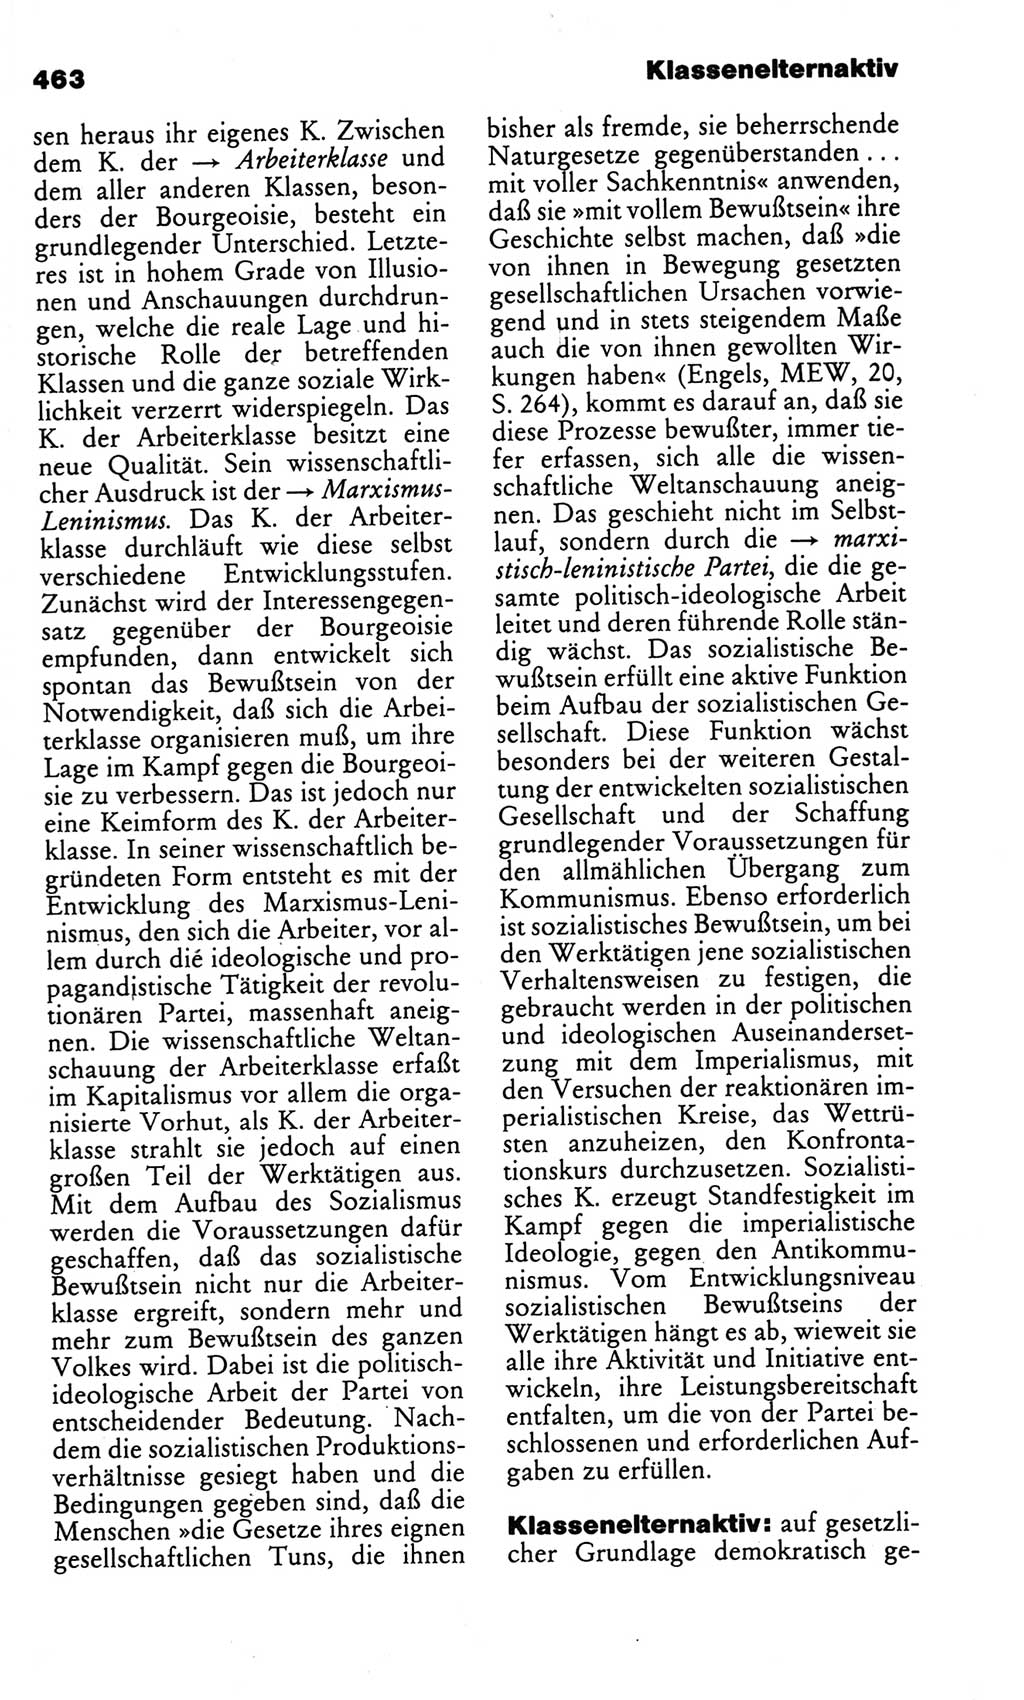 Kleines politisches Wörterbuch [Deutsche Demokratische Republik (DDR)] 1986, Seite 463 (Kl. pol. Wb. DDR 1986, S. 463)